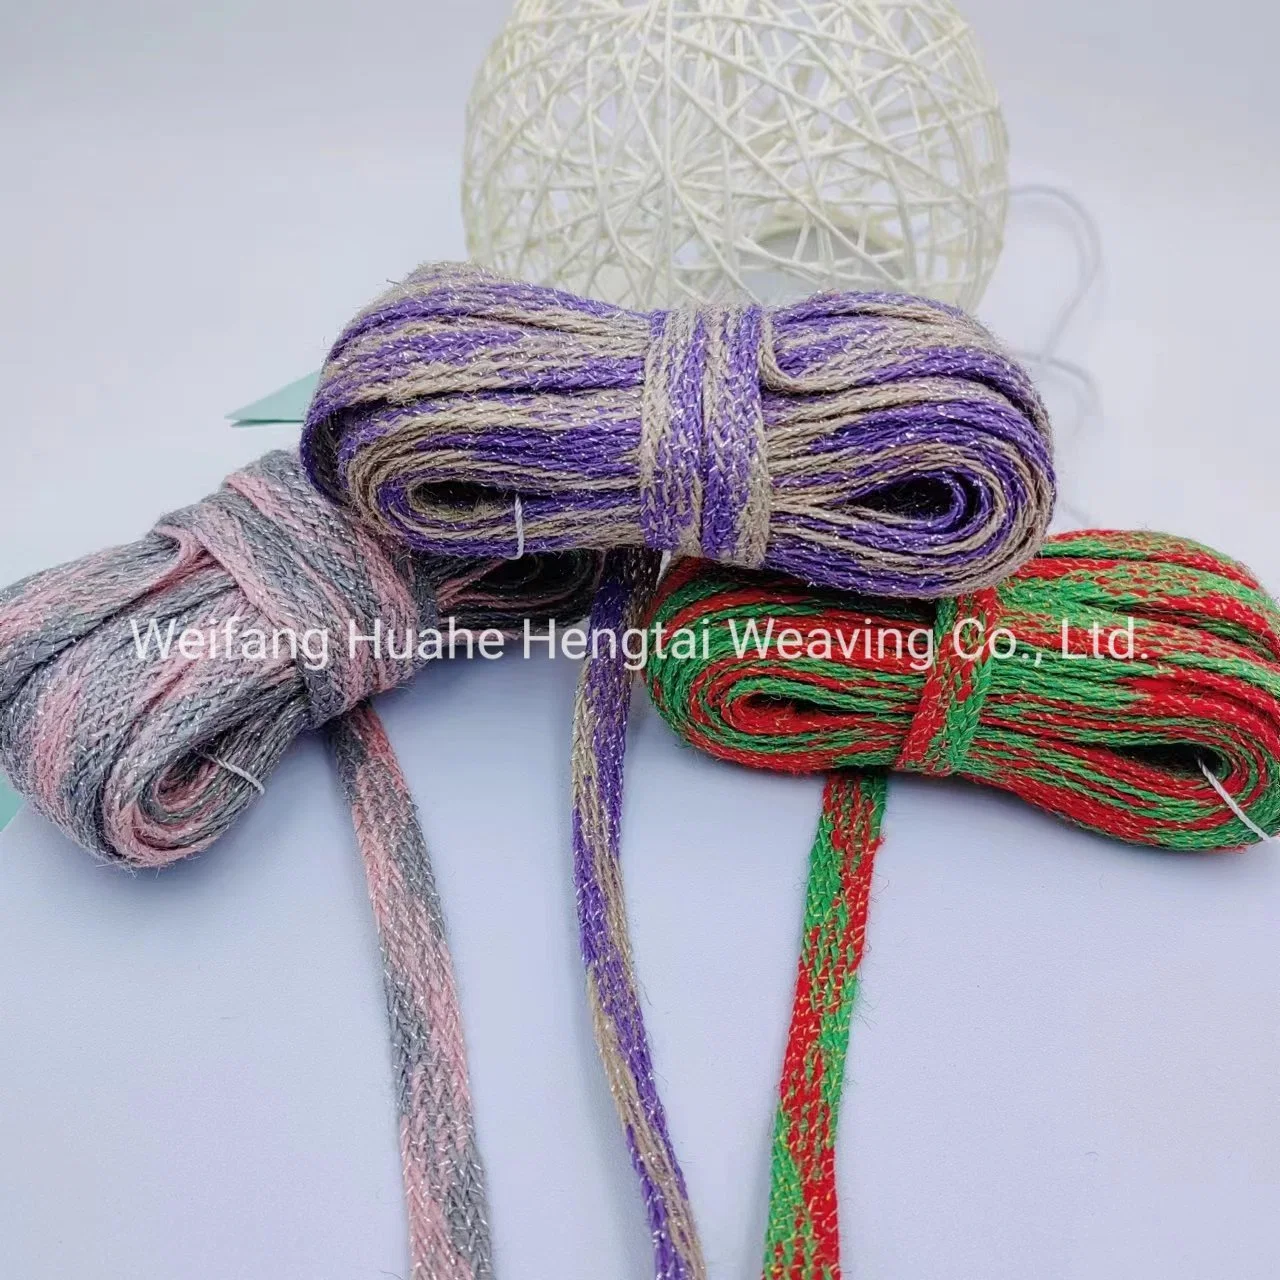 Großhandel/Lieferant von chinesischen Stil gewebten Bänder, Seide und Jute Weaving